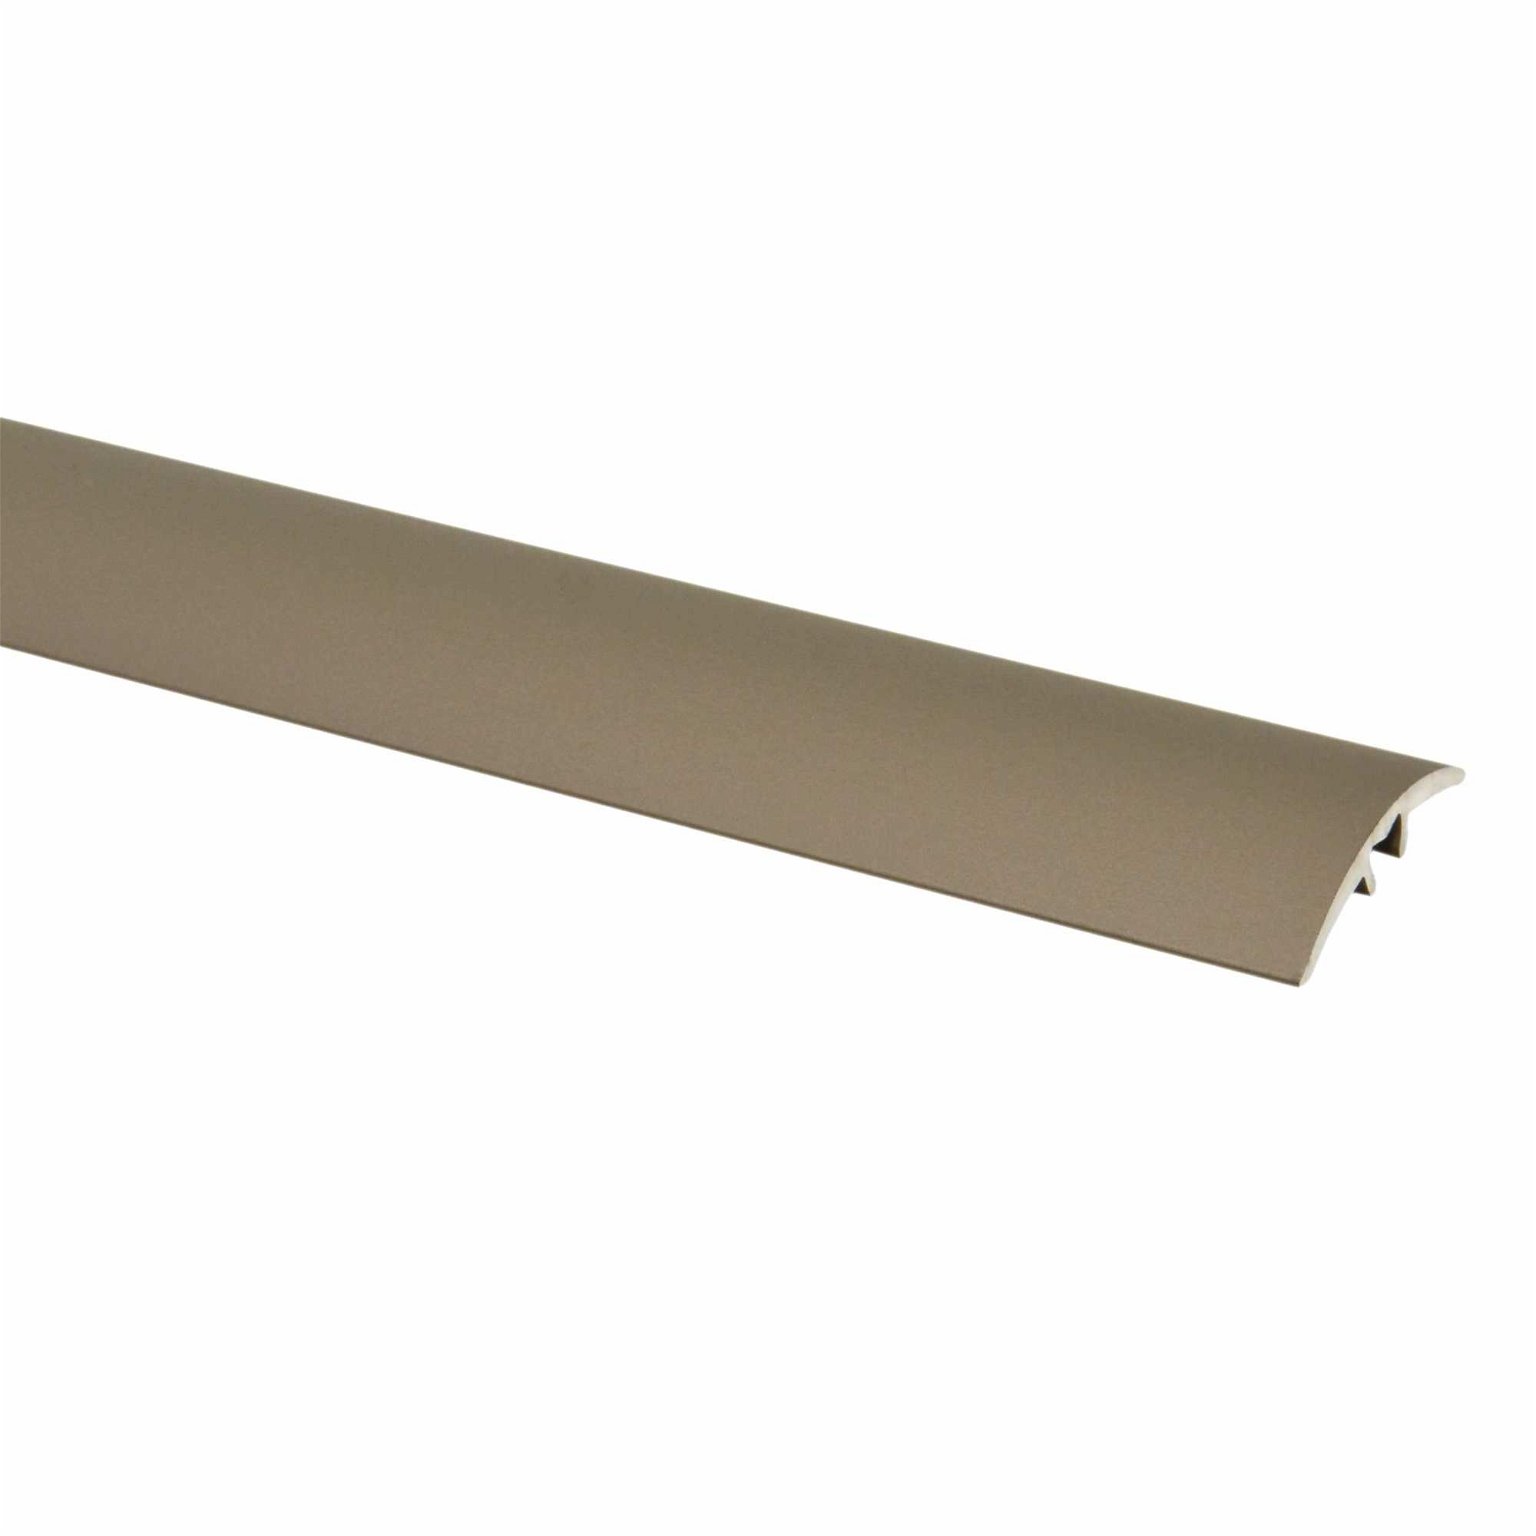 Aliumininė grindų juostelė PR3K A3, titano sp., 30 mm pločio, 93 cm ilgio